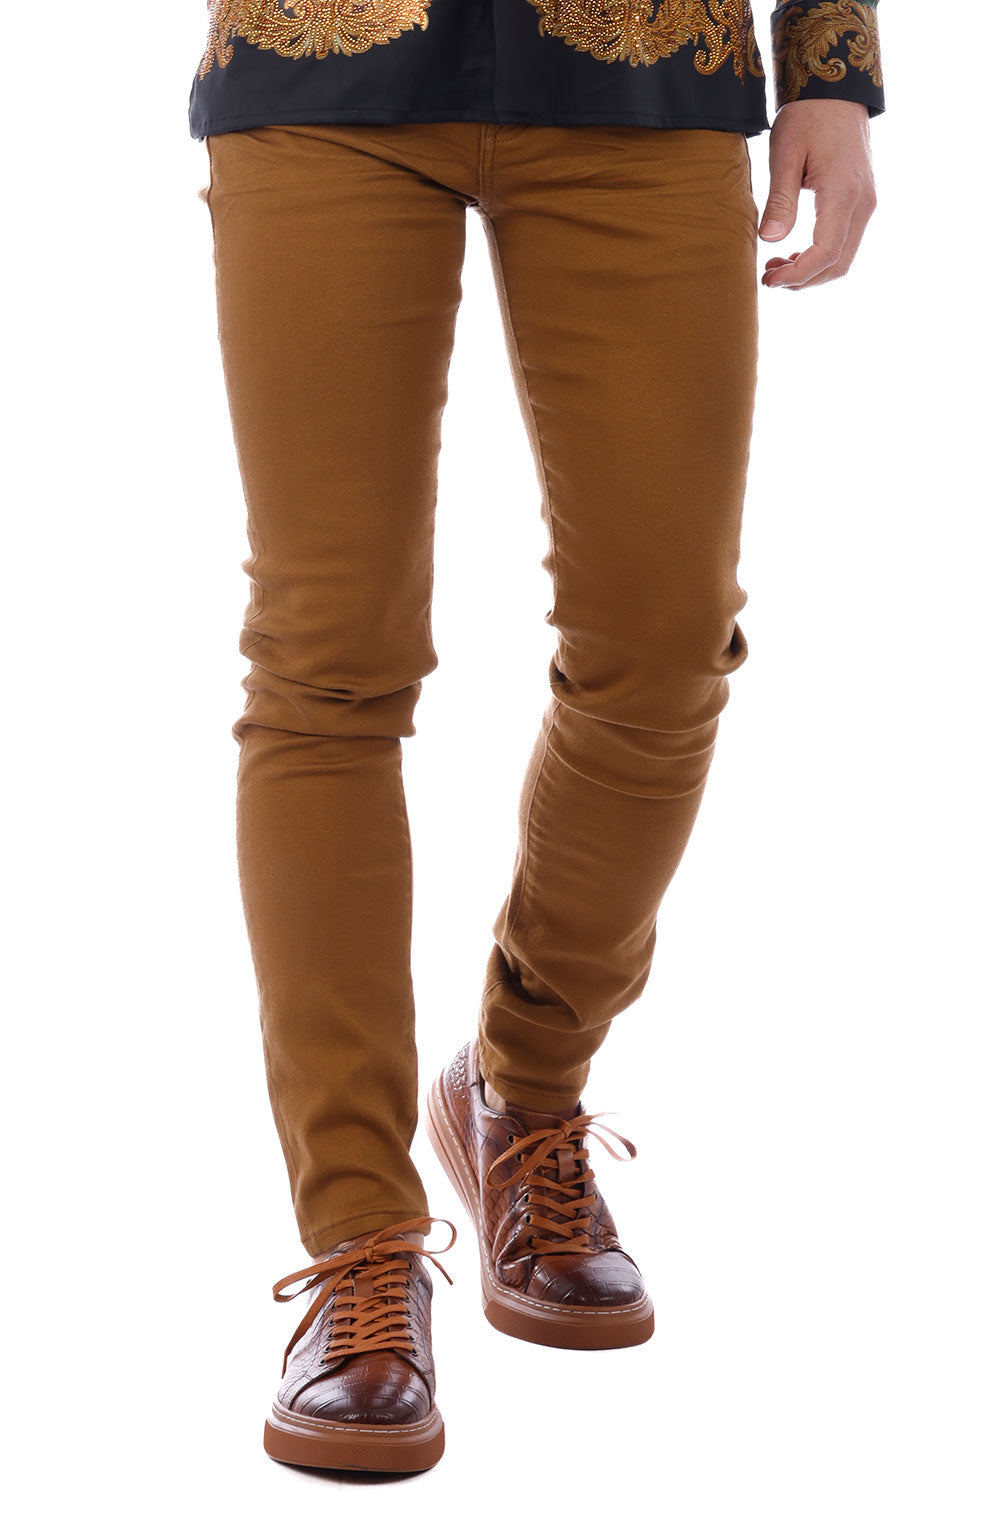 Barabas Men's Skinny Fit Classic Denim Solid Color Jeans 1700 Caramel